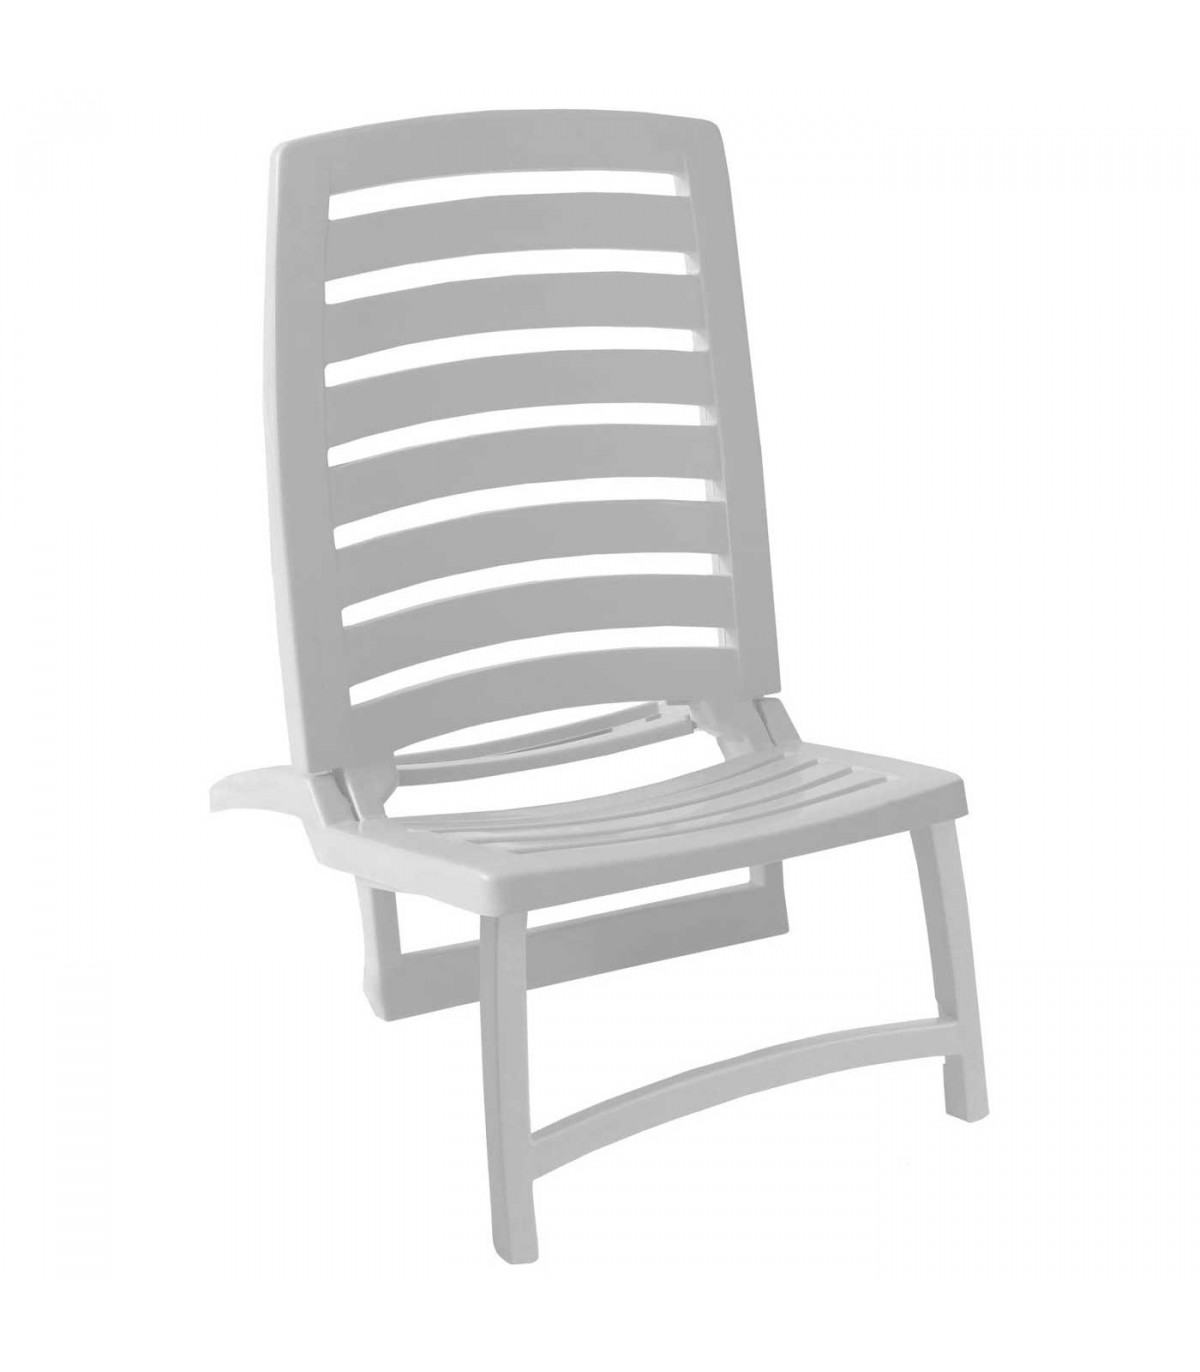 Tradineur - Silla plegable para playa, fabricado en resistente plástico,  ligero y cómodo. Color blanco. 64 x 42 x 85 cm